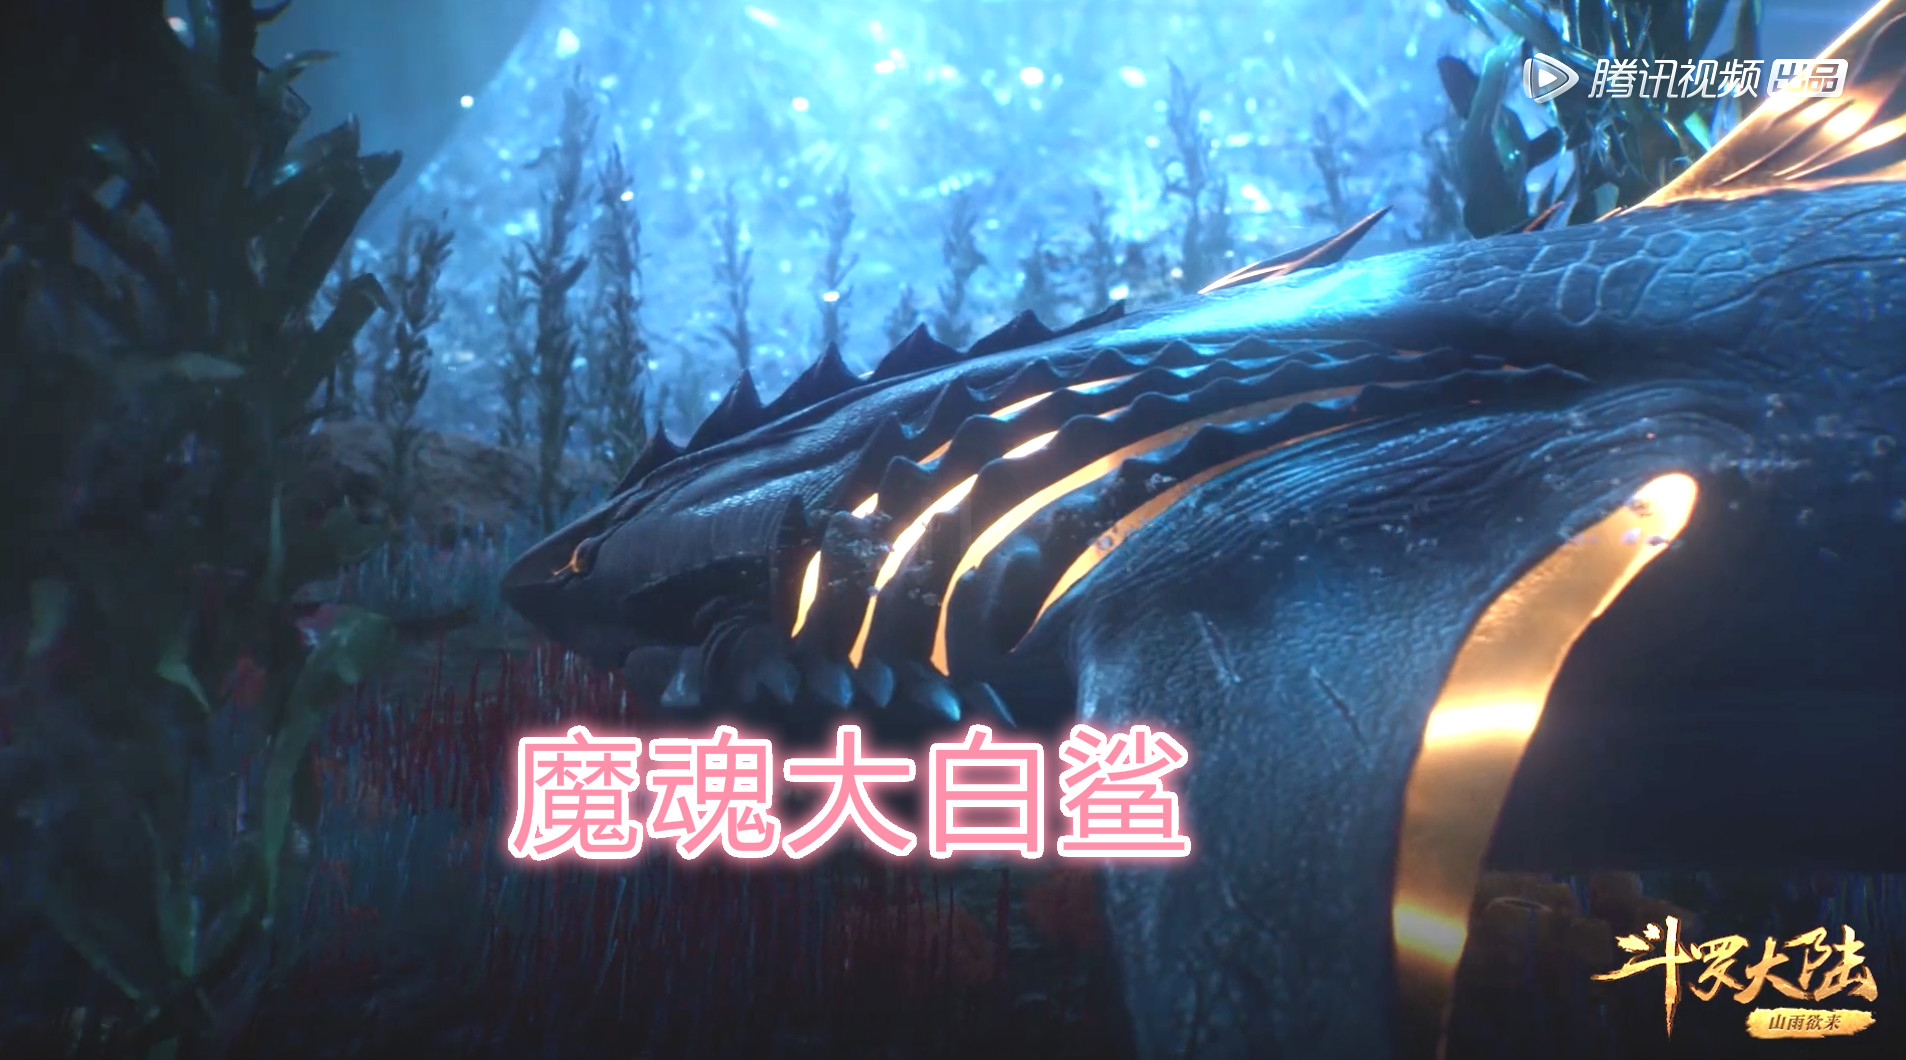 斗罗:史莱克7怪冲击海神岛,魔魂大白鲨居然刁难未来的海神大人